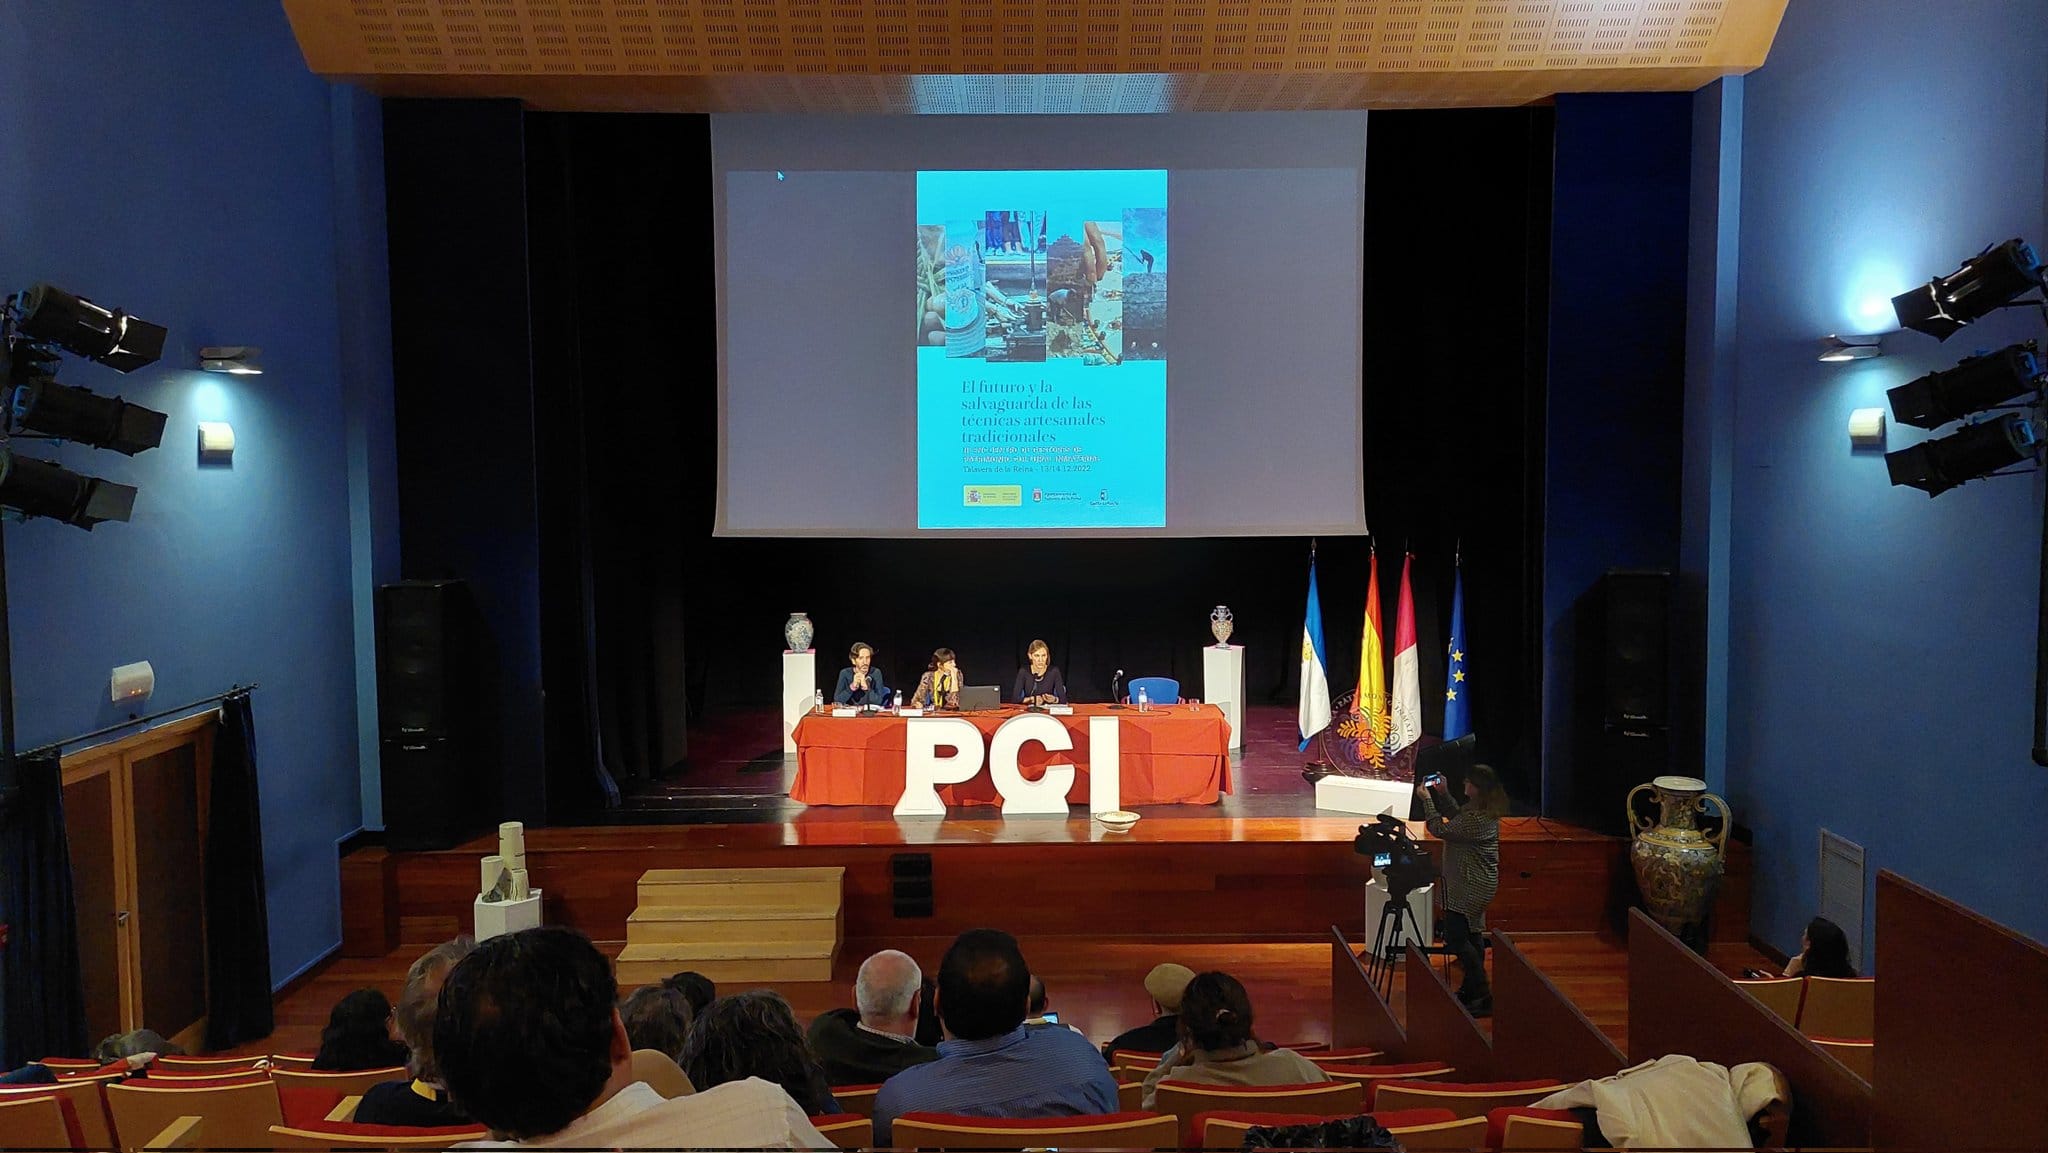 Presentació de les conclusions de la III Trobada de Gestors de Patrimoni Cultural Immaterial (PCI) celebrada a Talavera de la Reina